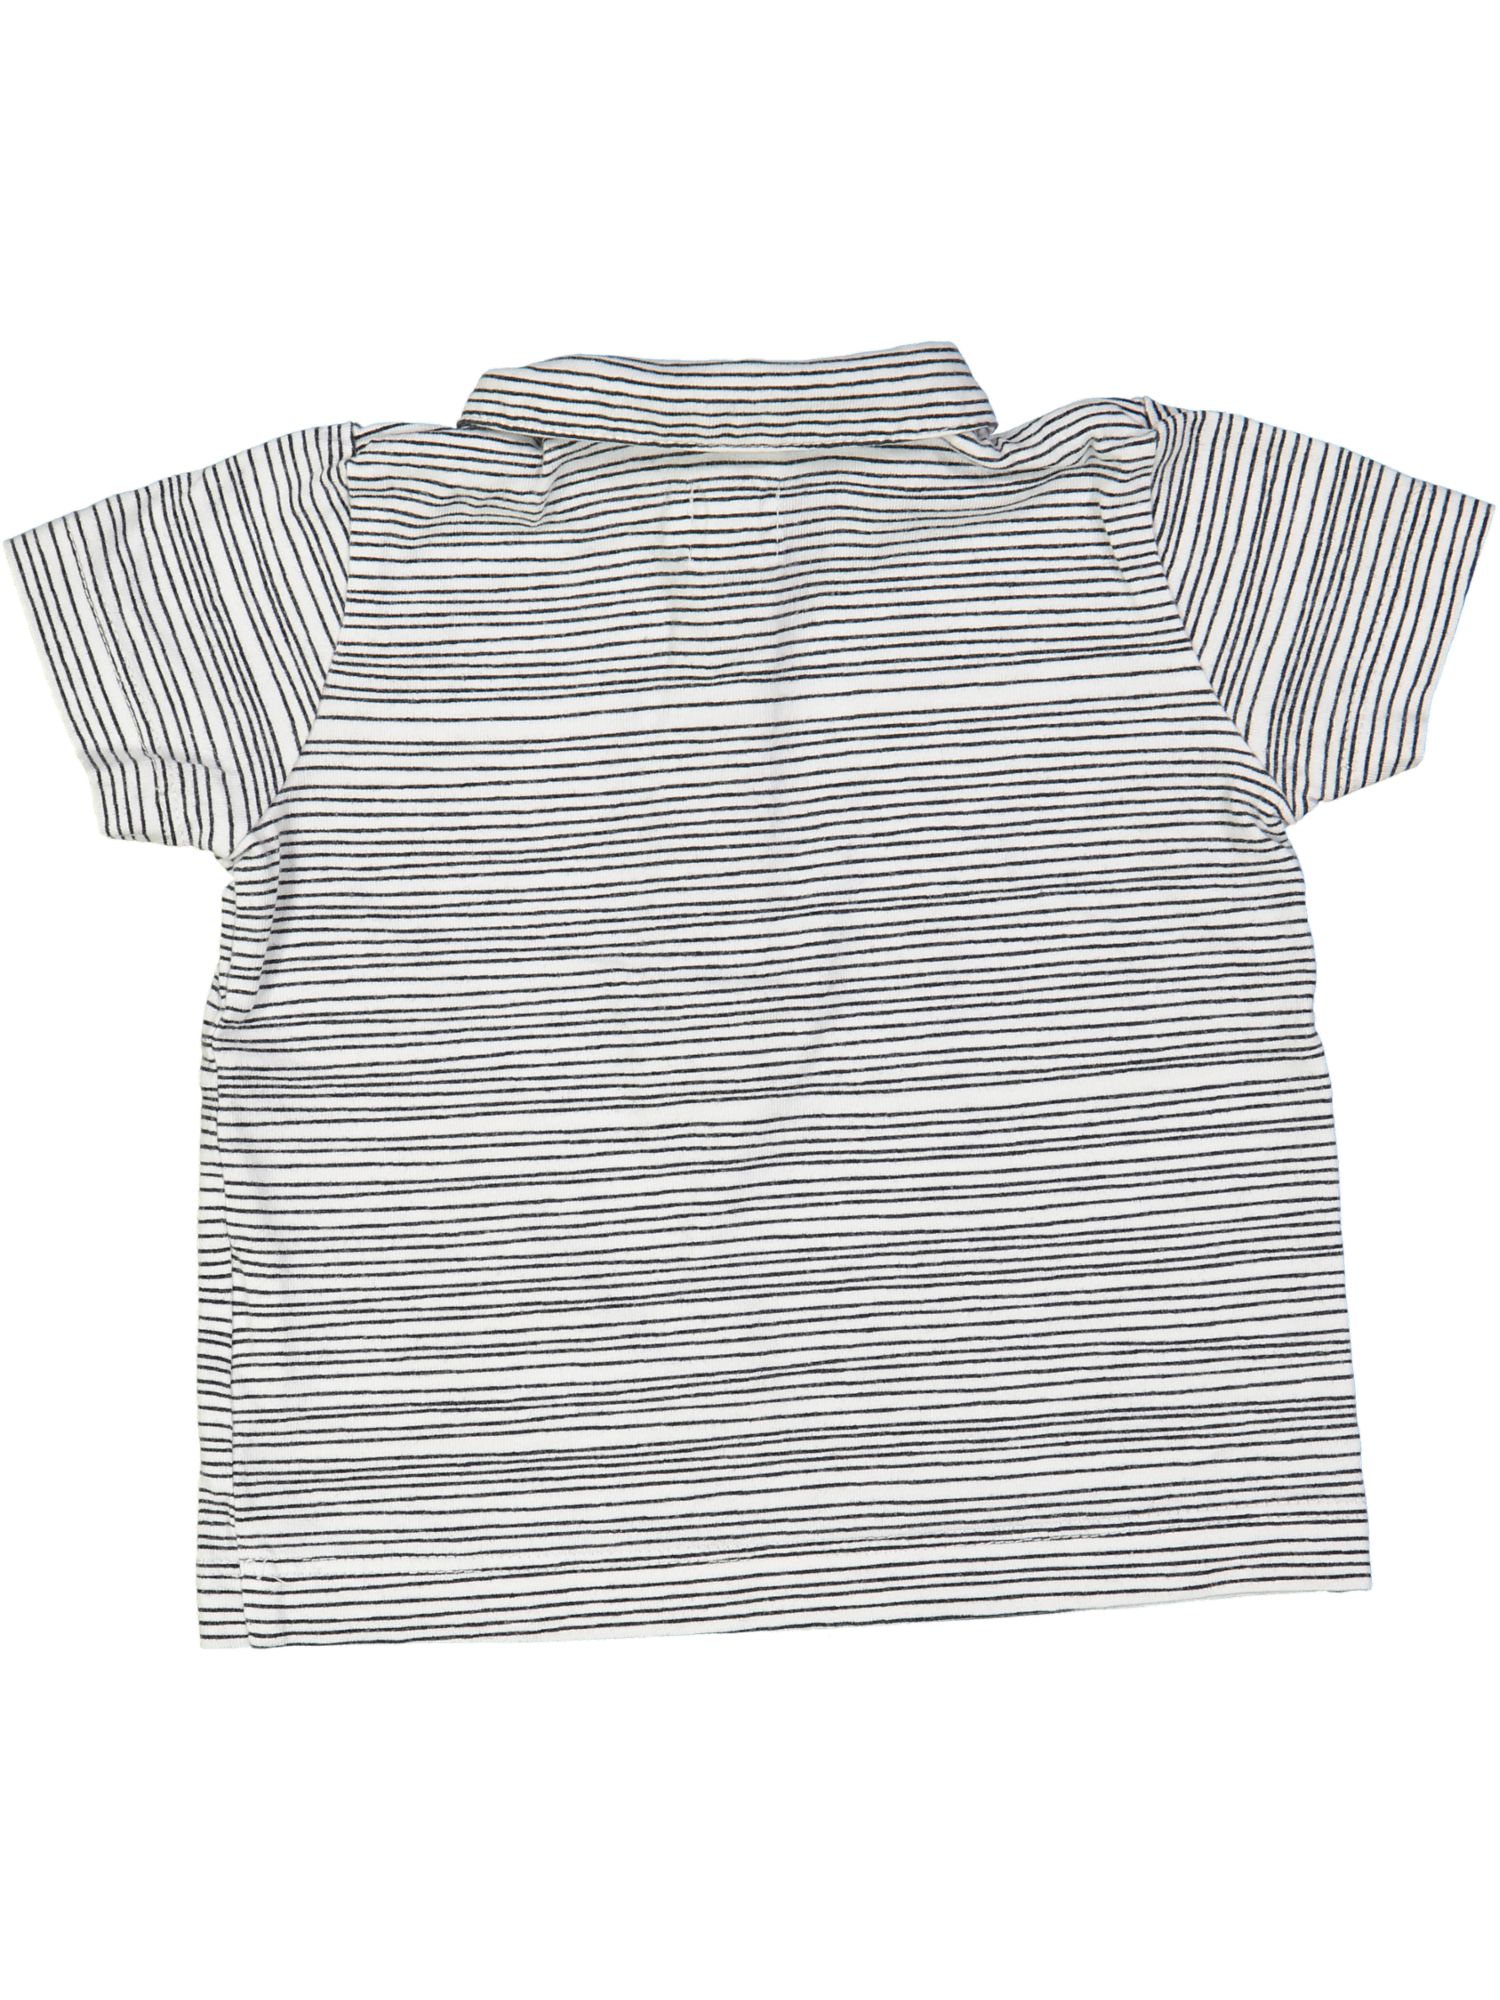 t-shirt wit streep 06m | Filou & Friends